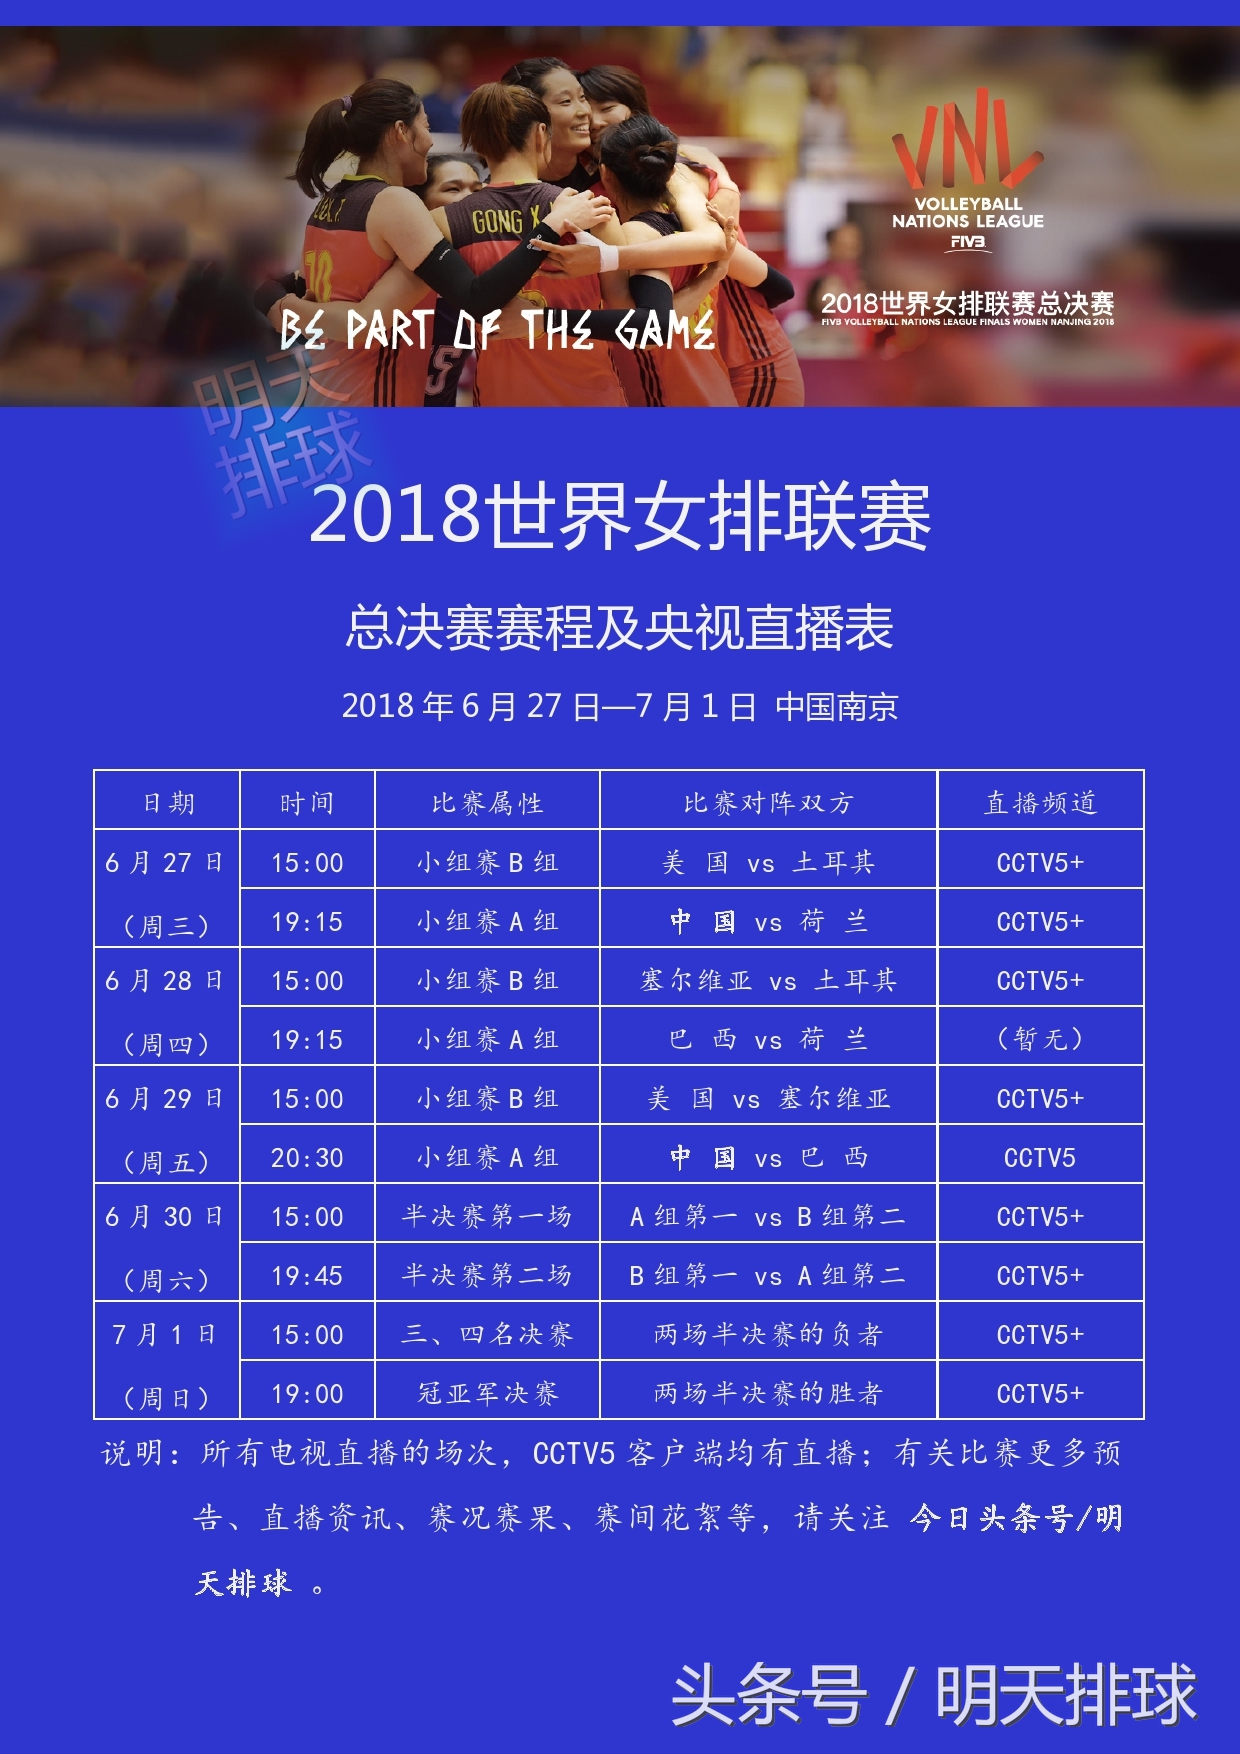 央视全程直播世界女排联赛南京总决赛